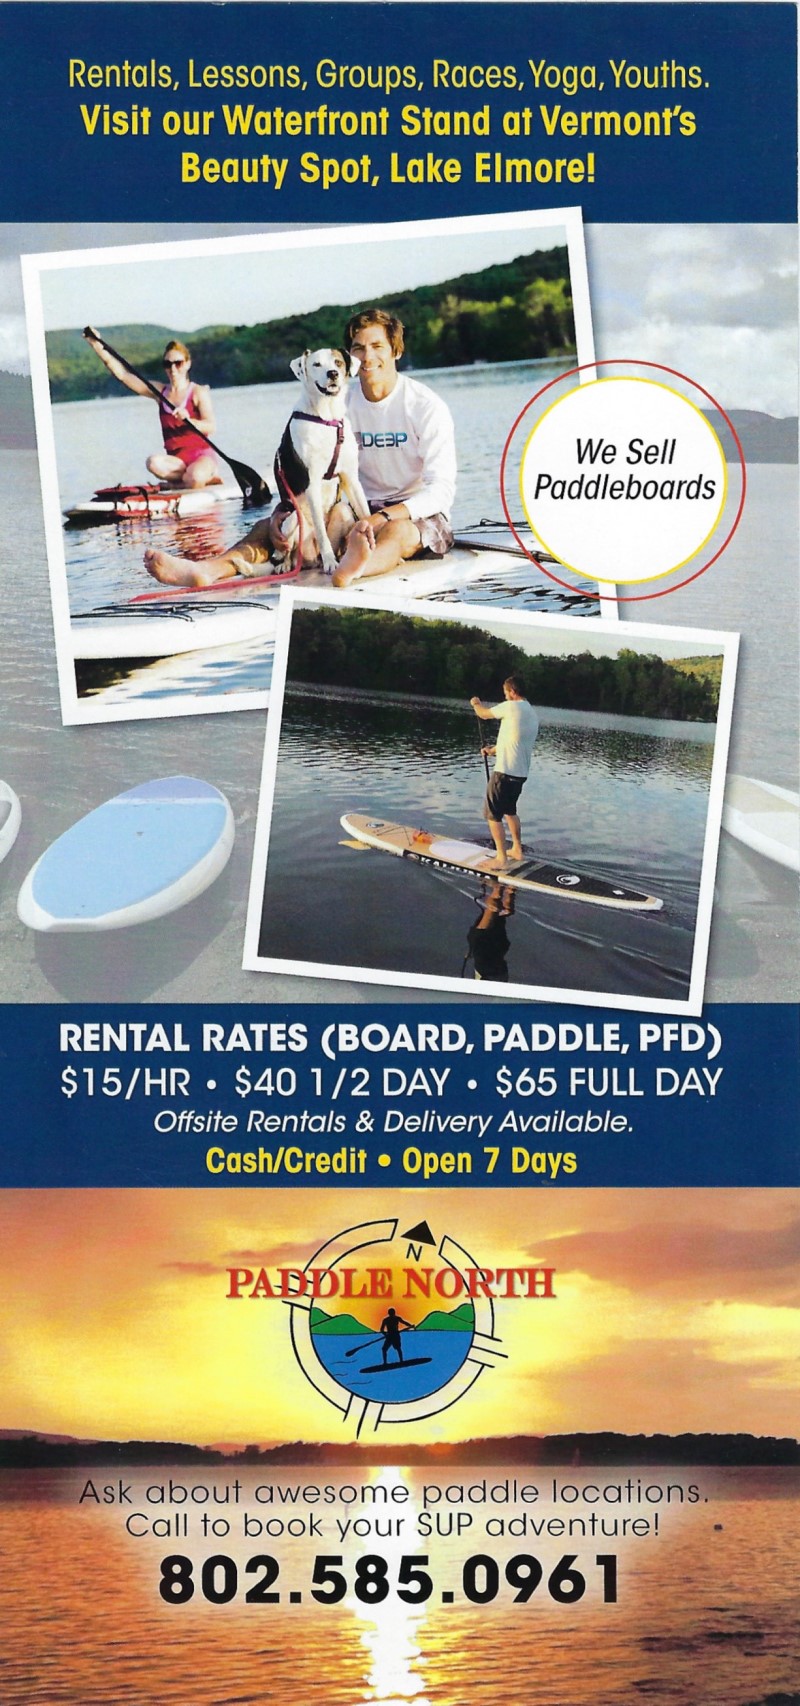 Paddle North VT brochure thumbnail